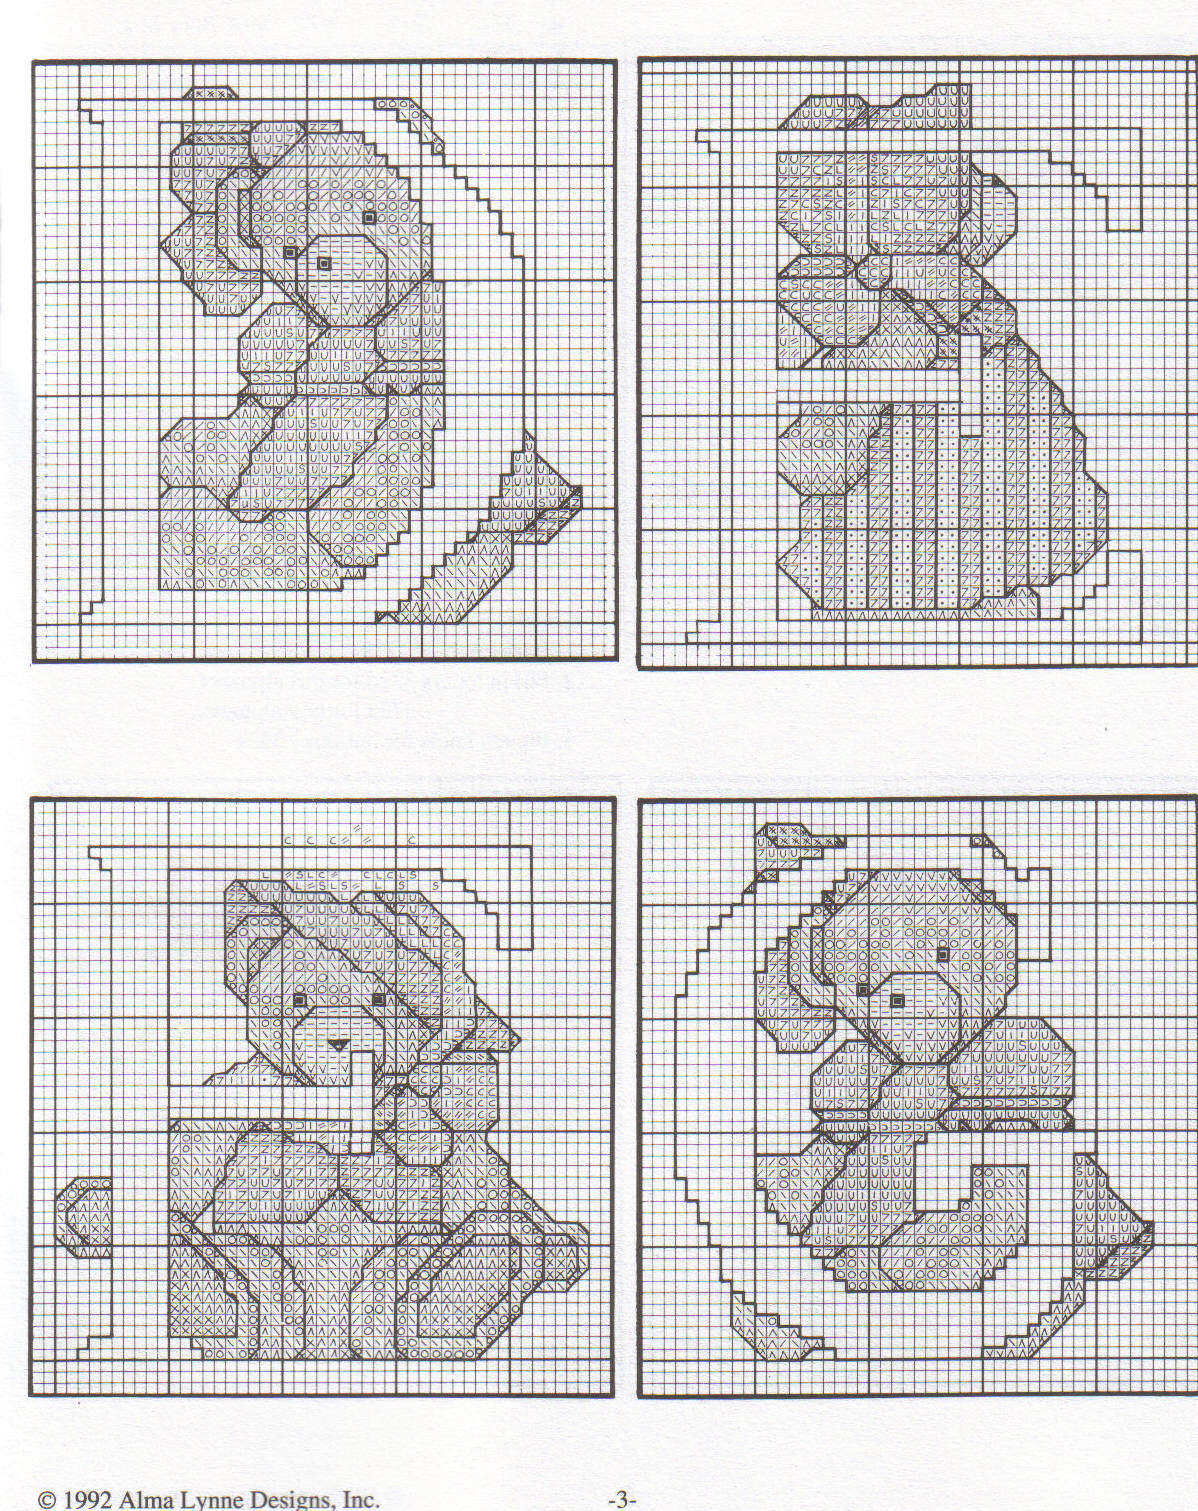 Cross stitch alphabet with sweet teddy bears (5)